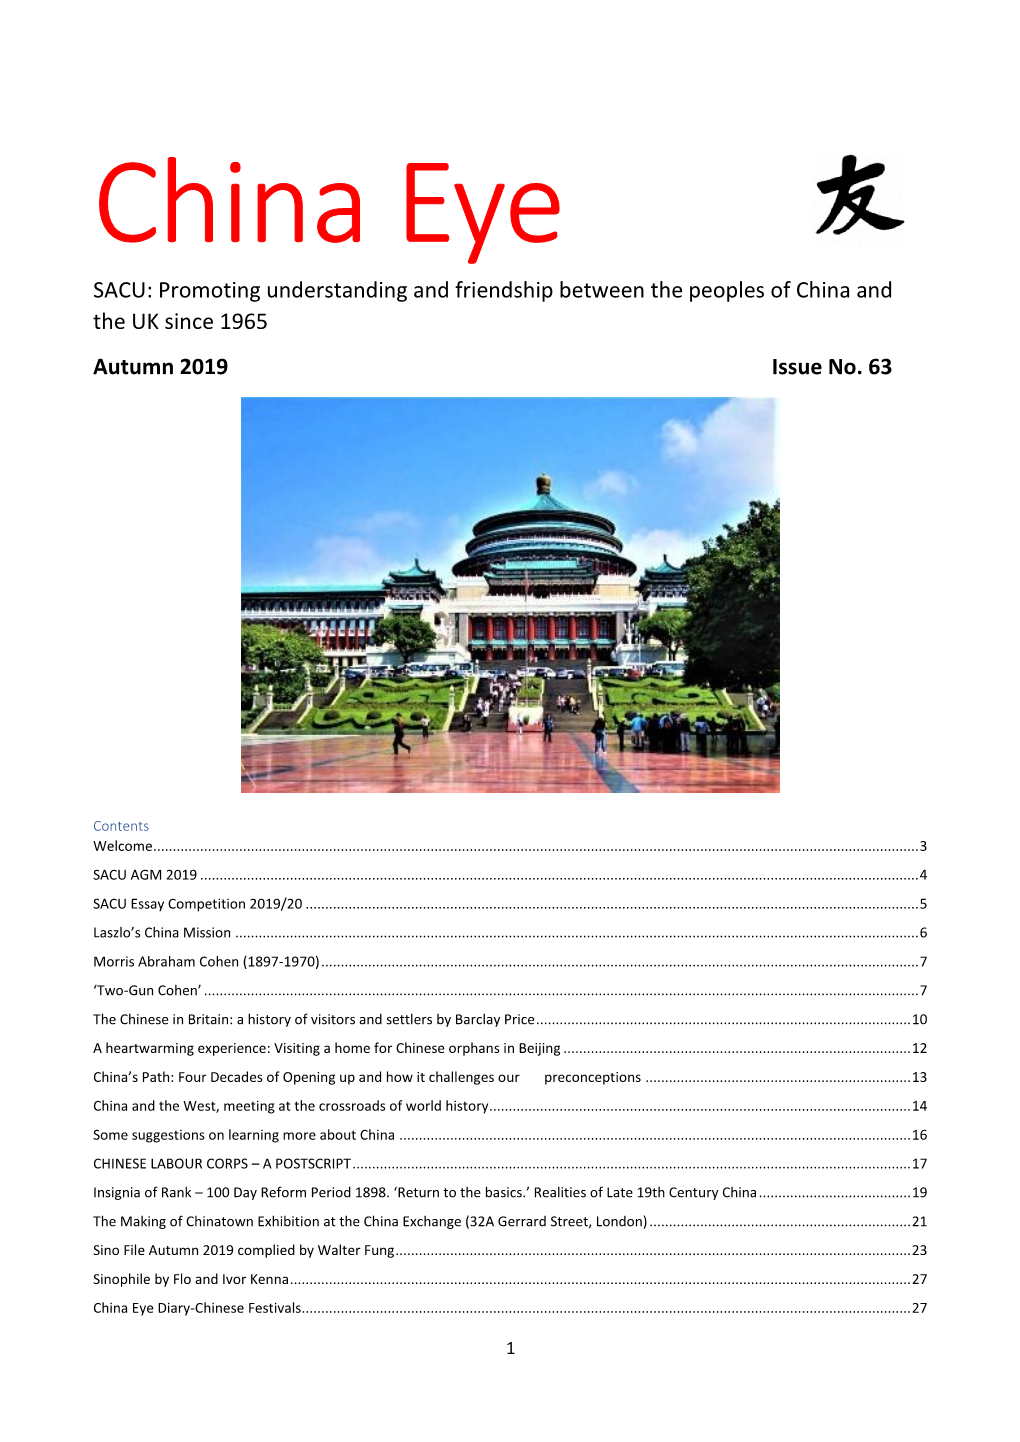 SACU China Eye Issue 63 Autumn 2019